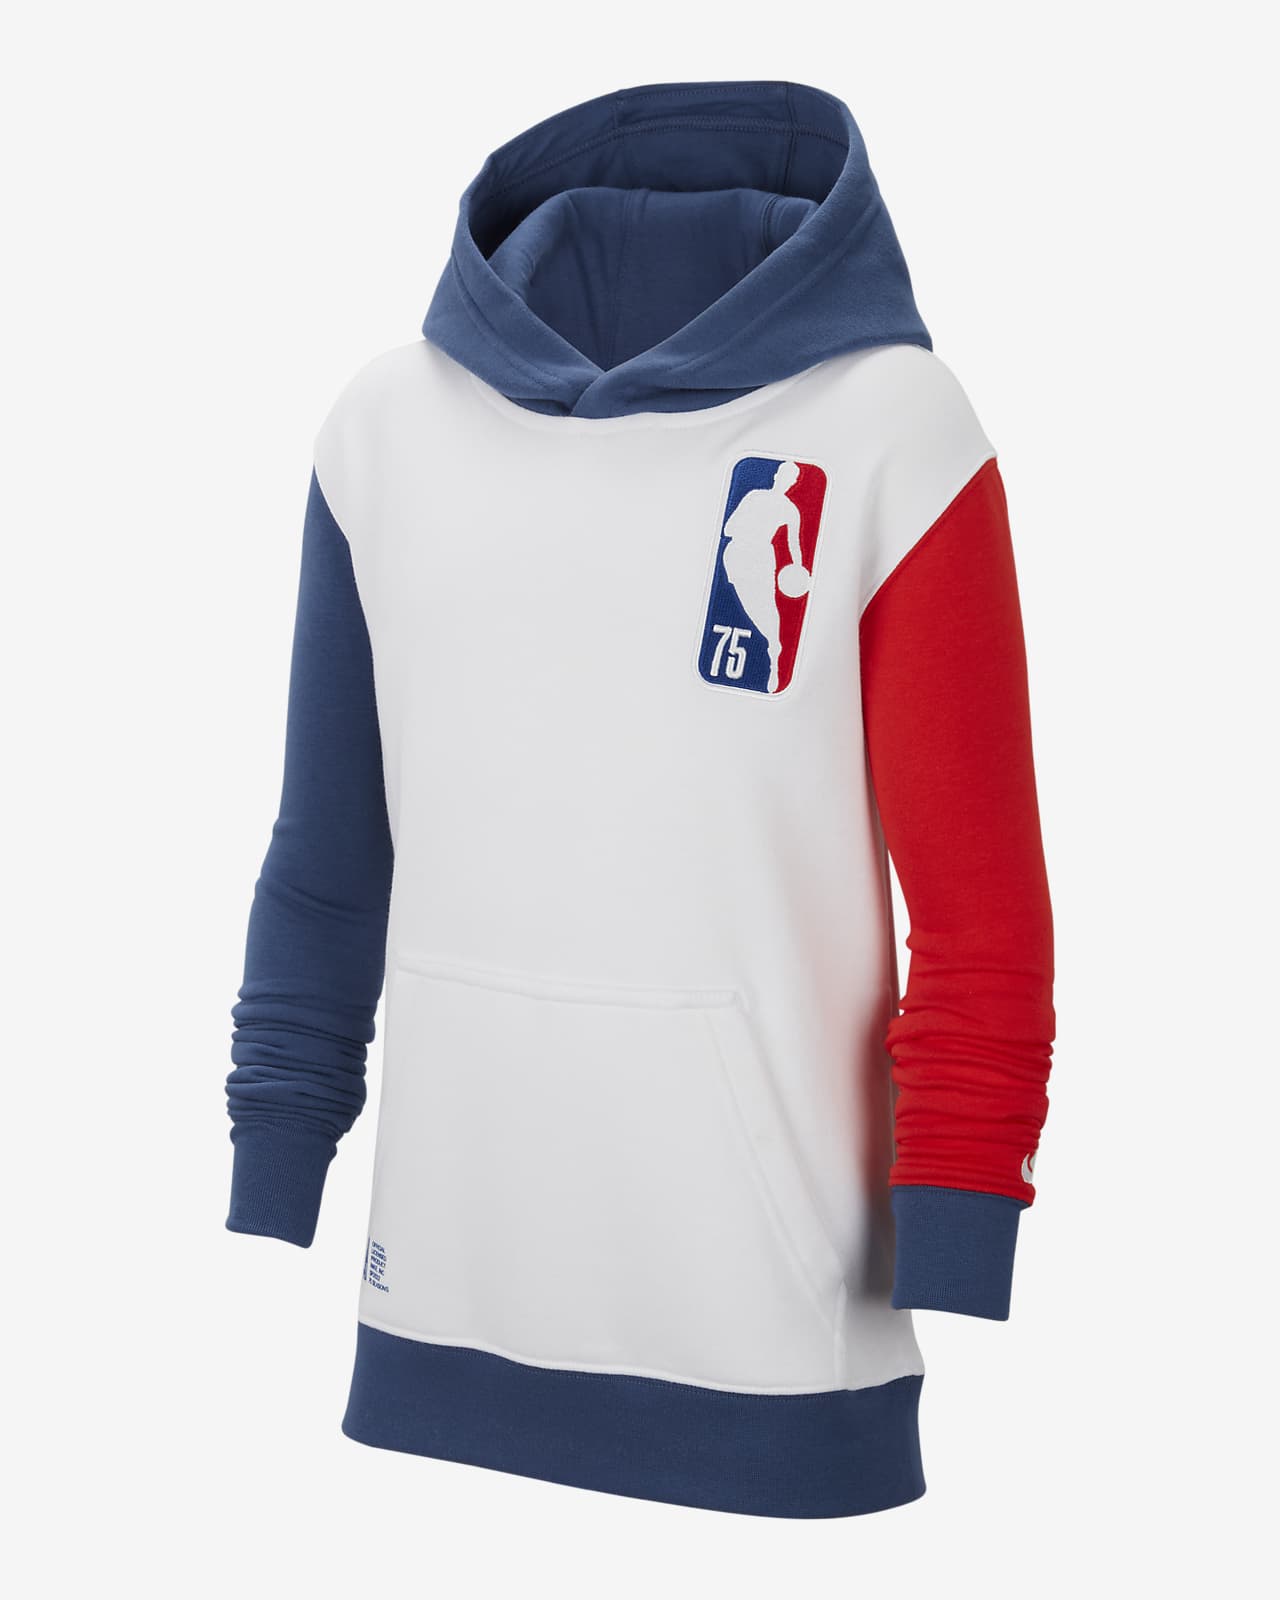 Felpa pullover in fleece con cappuccio Team 31 Courtside Nike NBA – Ragazzi